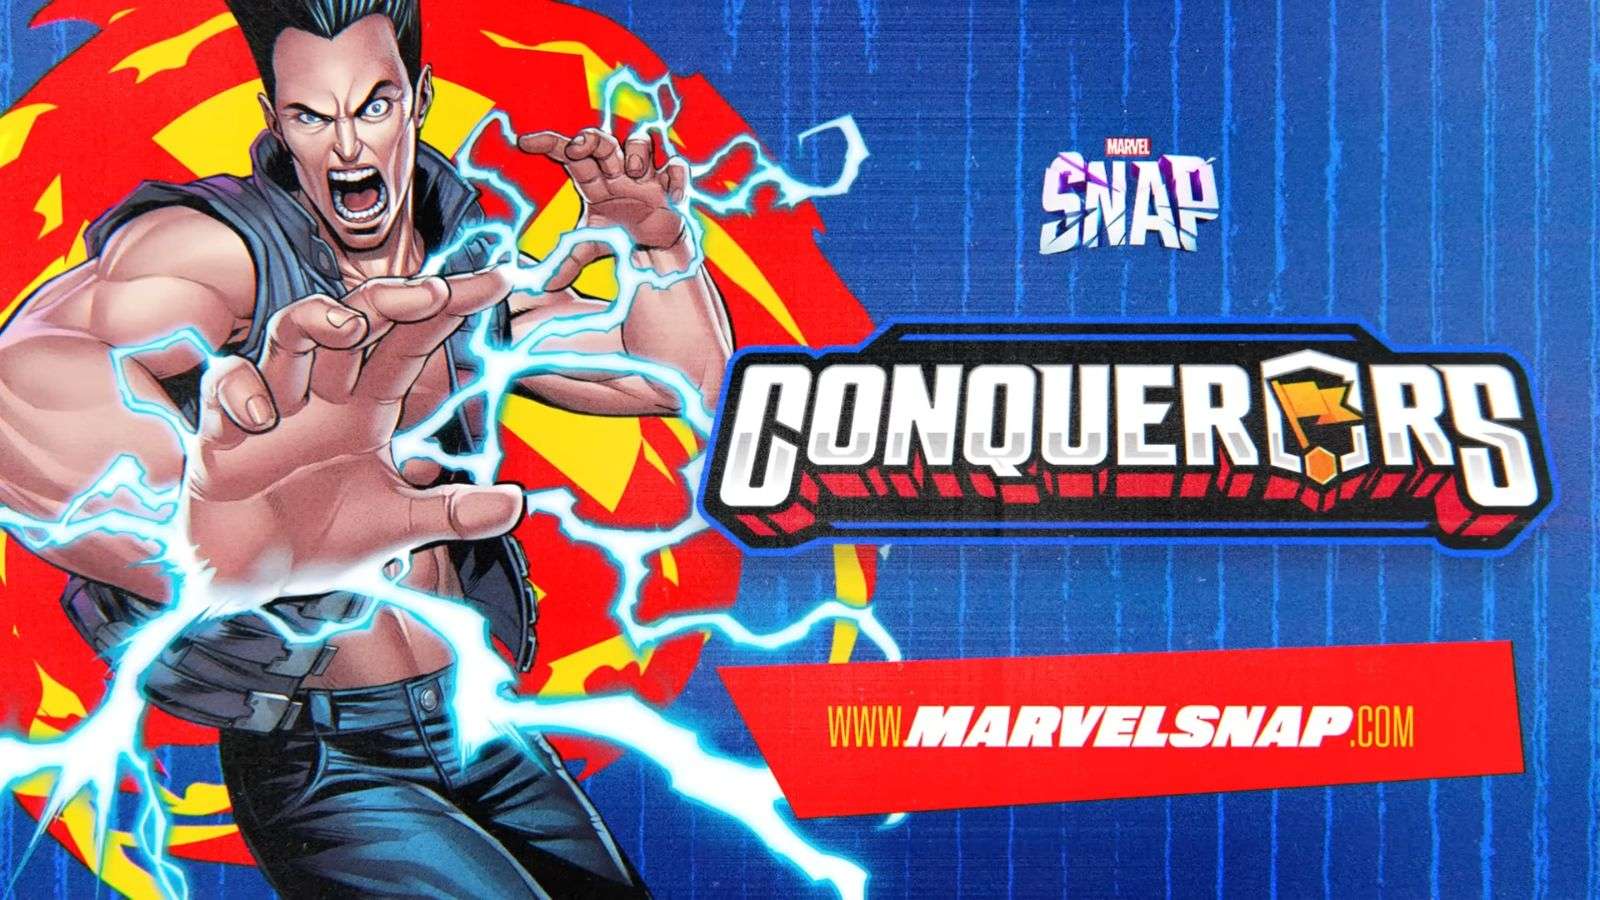 Marvel Snap Conqueror event